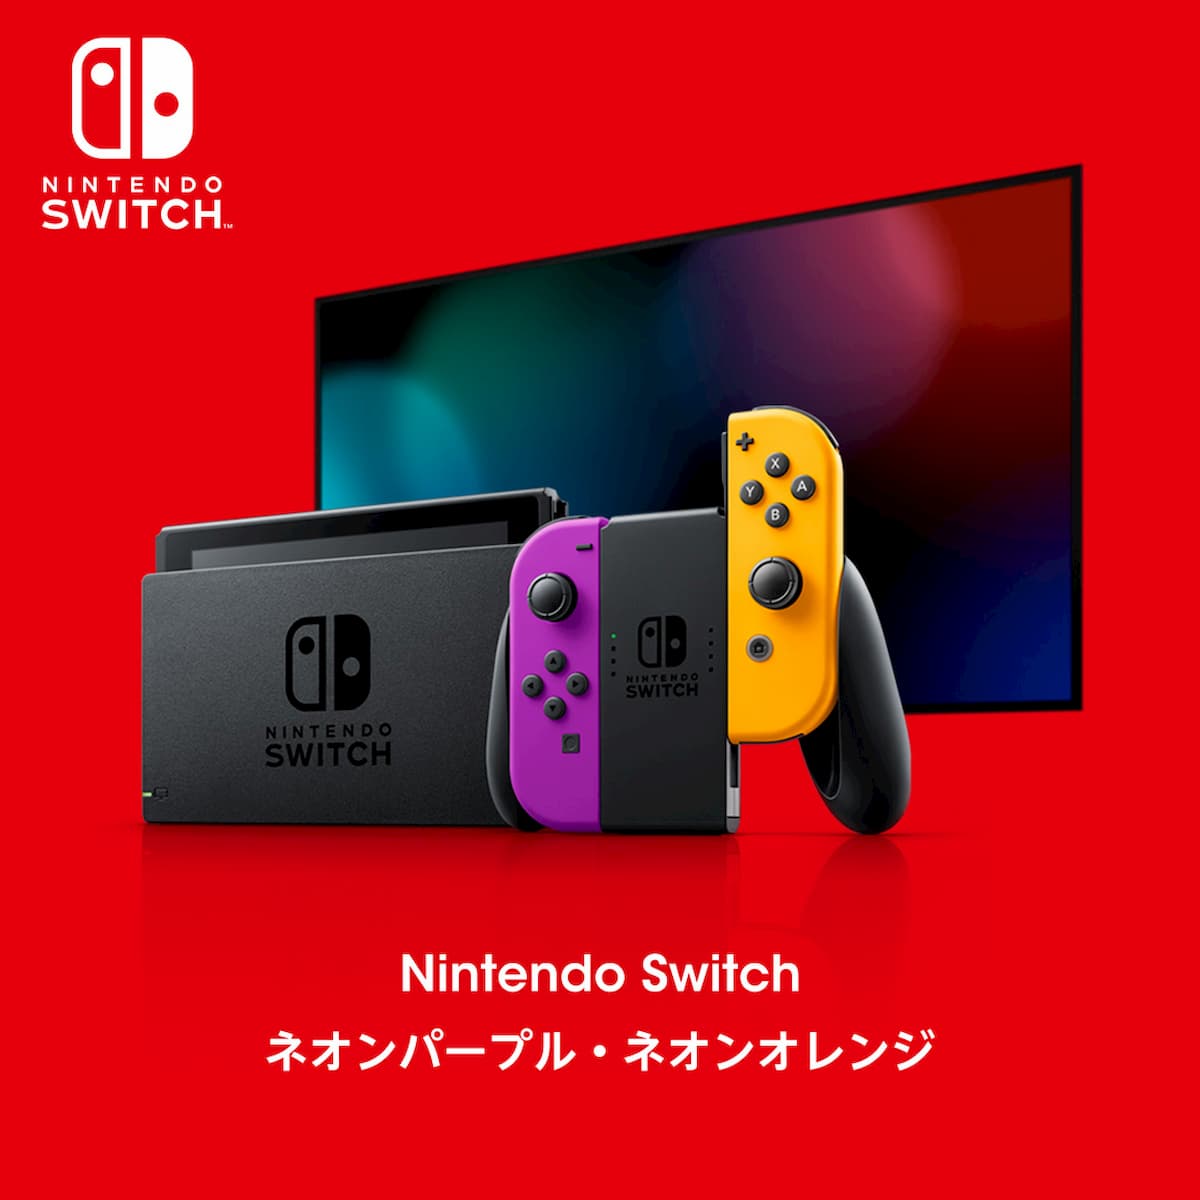 Nintendo Switch (L)ネオンパープル・(R)ネオンオレンジ